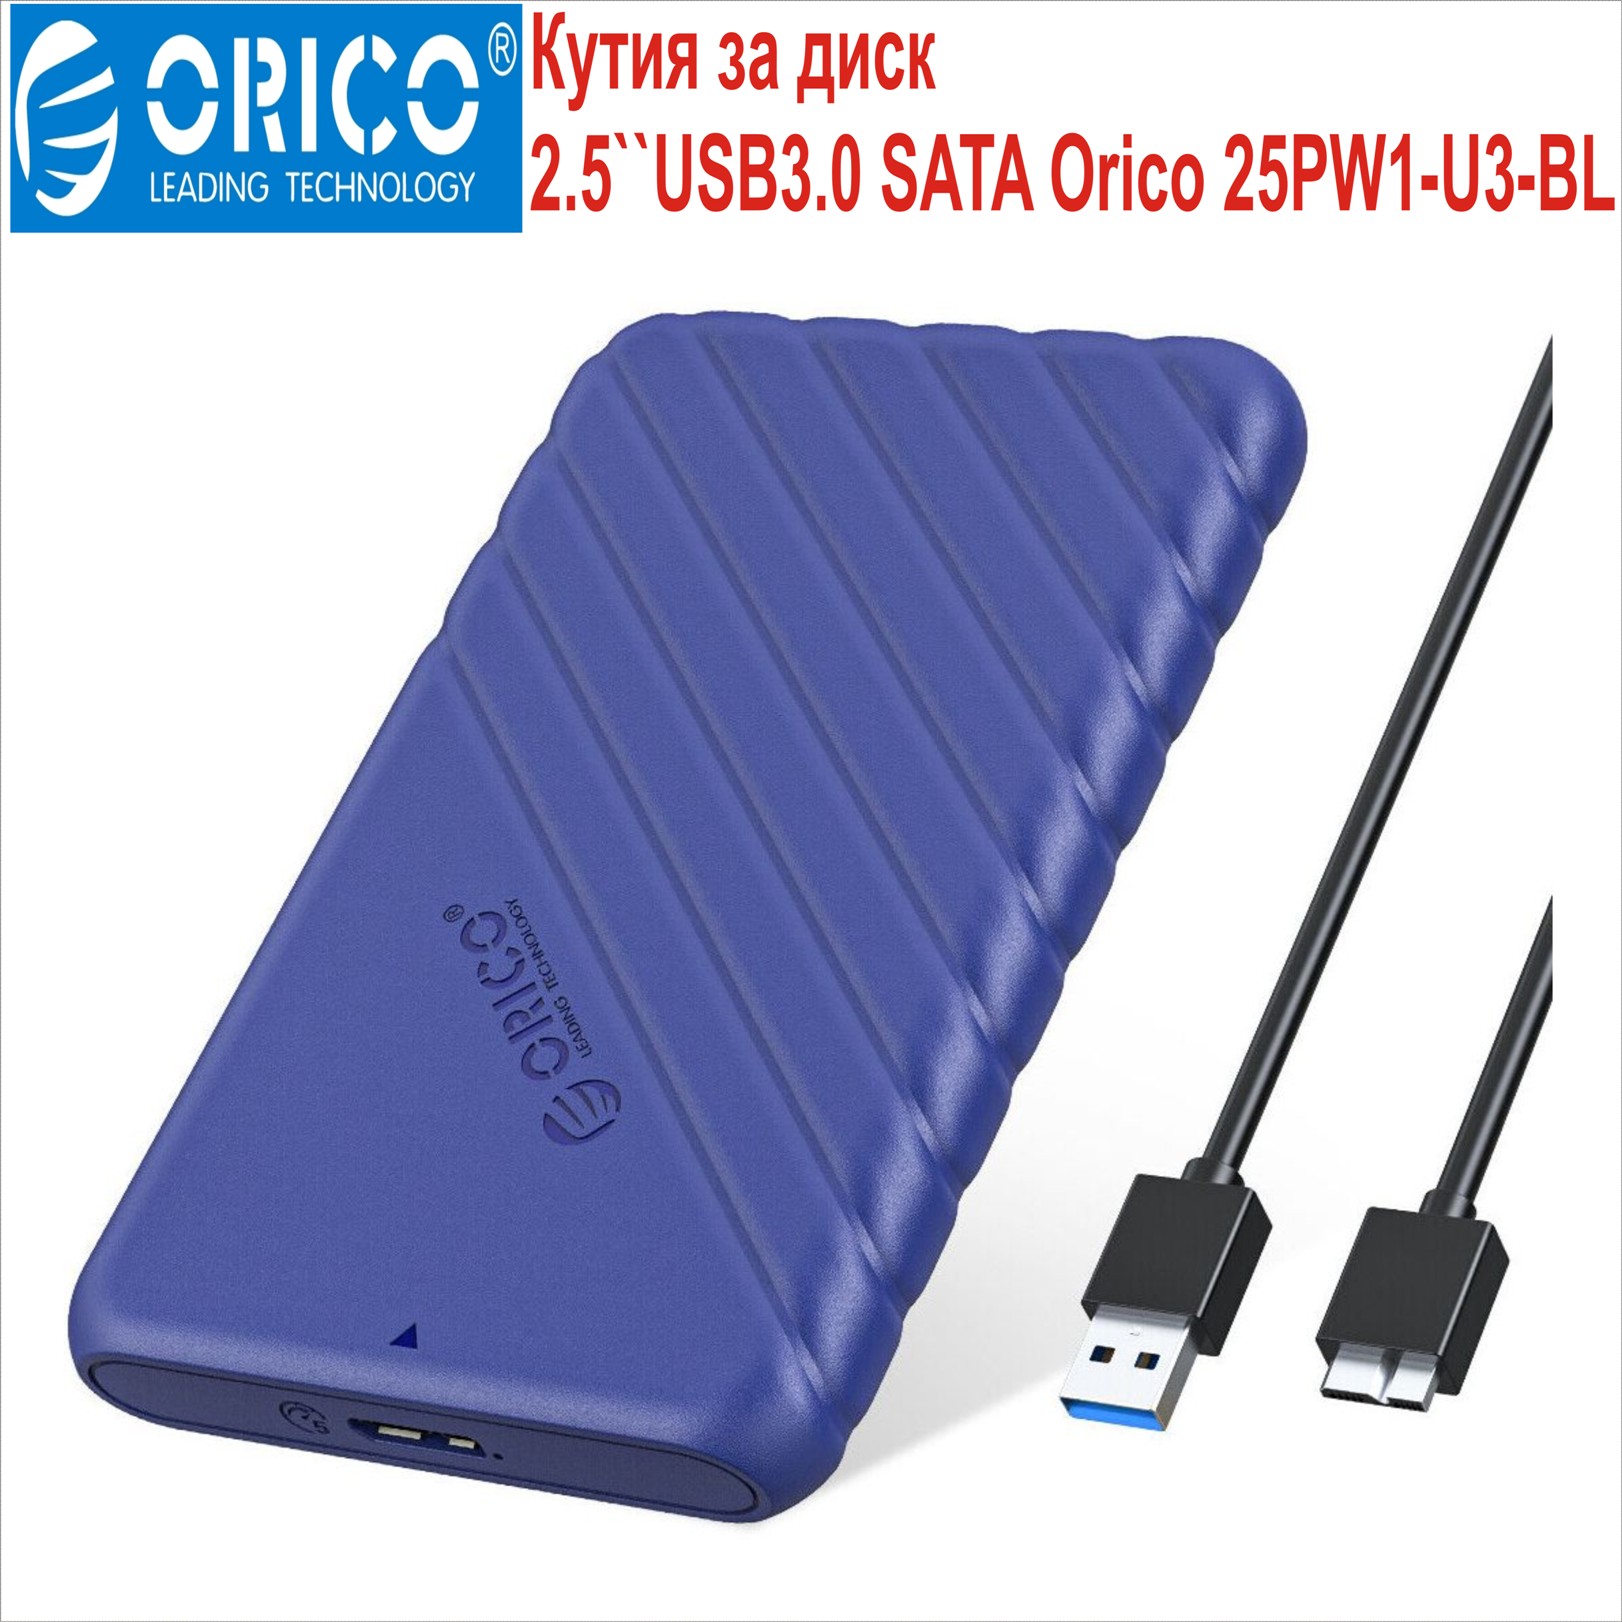 Кутия за диск 2.5``USB3.0 SATA Orico 25PW1-U3-BL